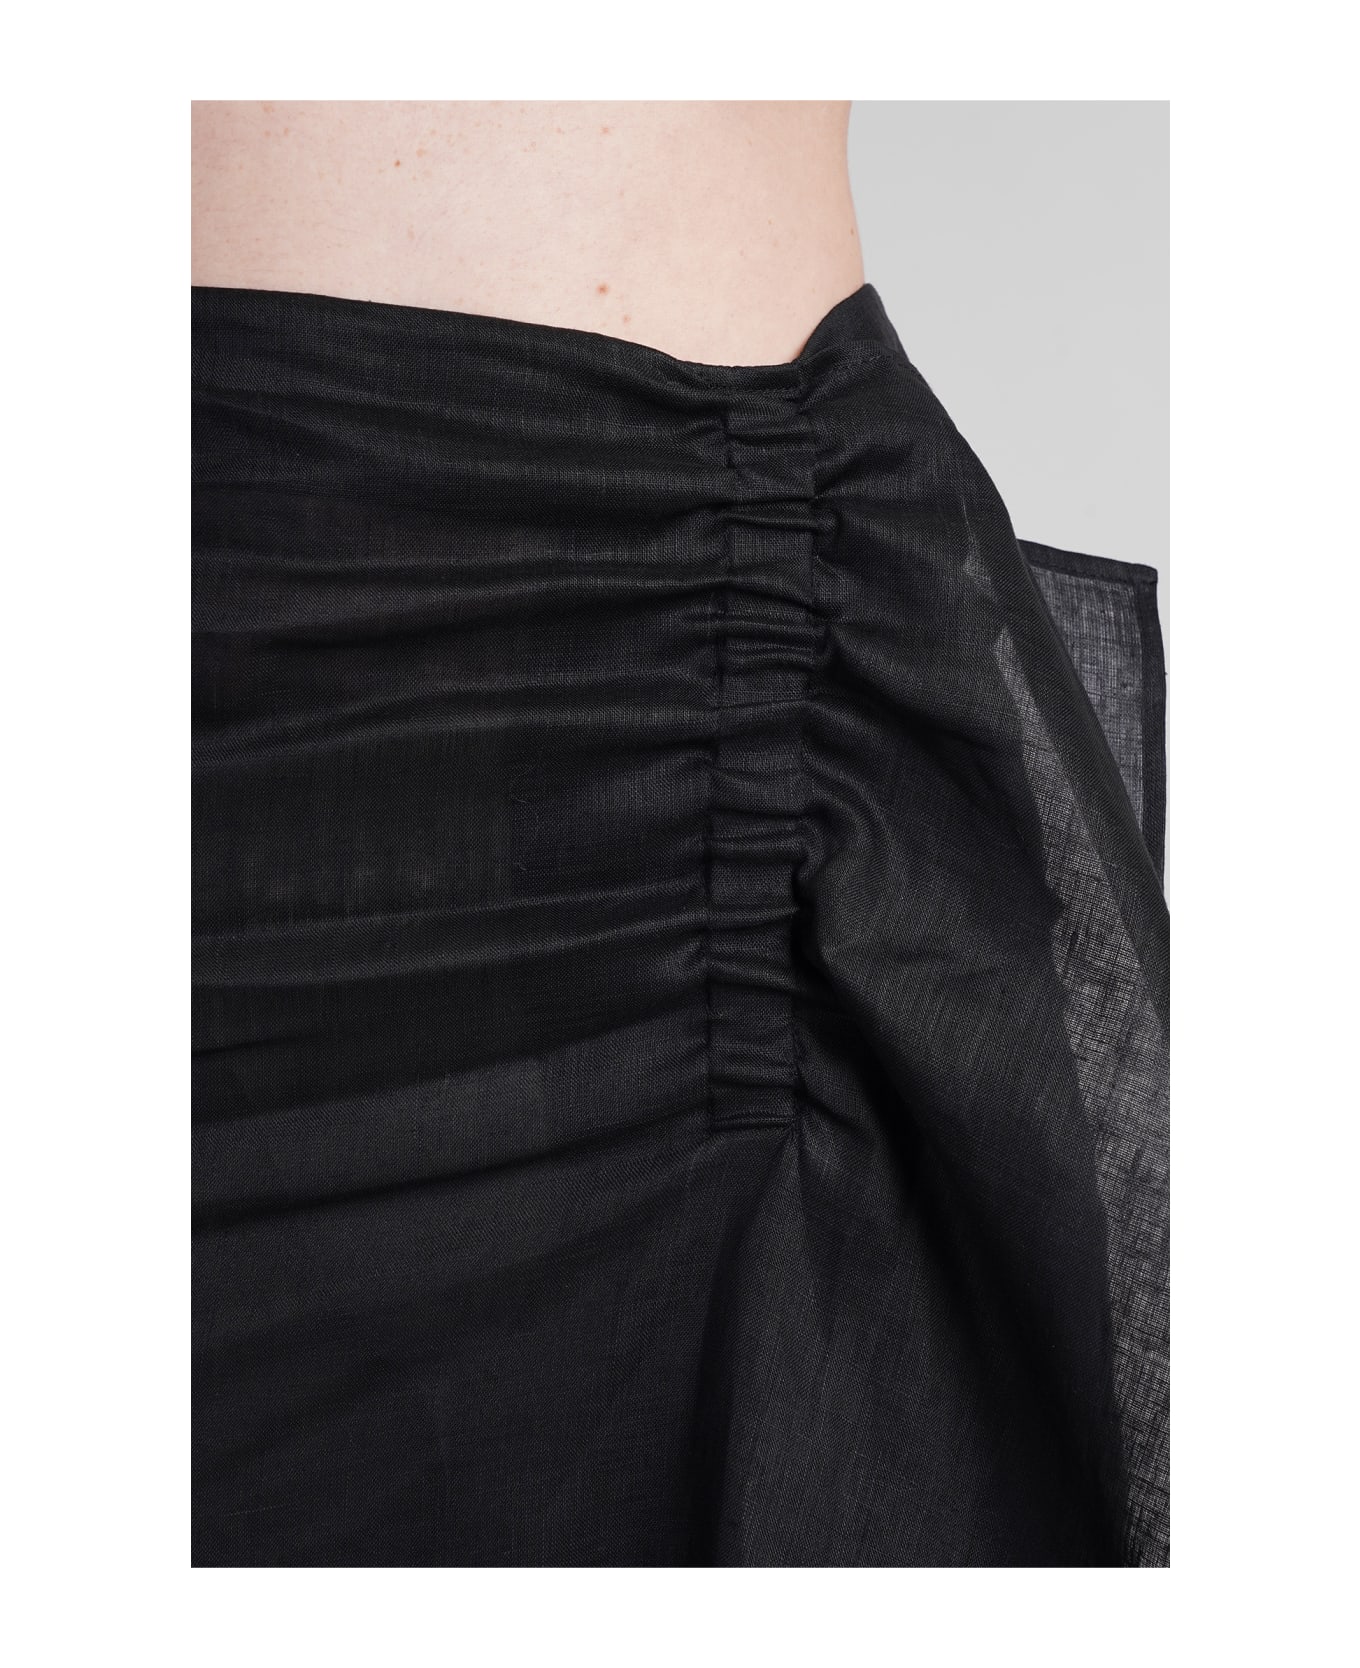 Holy Caftan Ginger Py Skirt In Black Linen - black